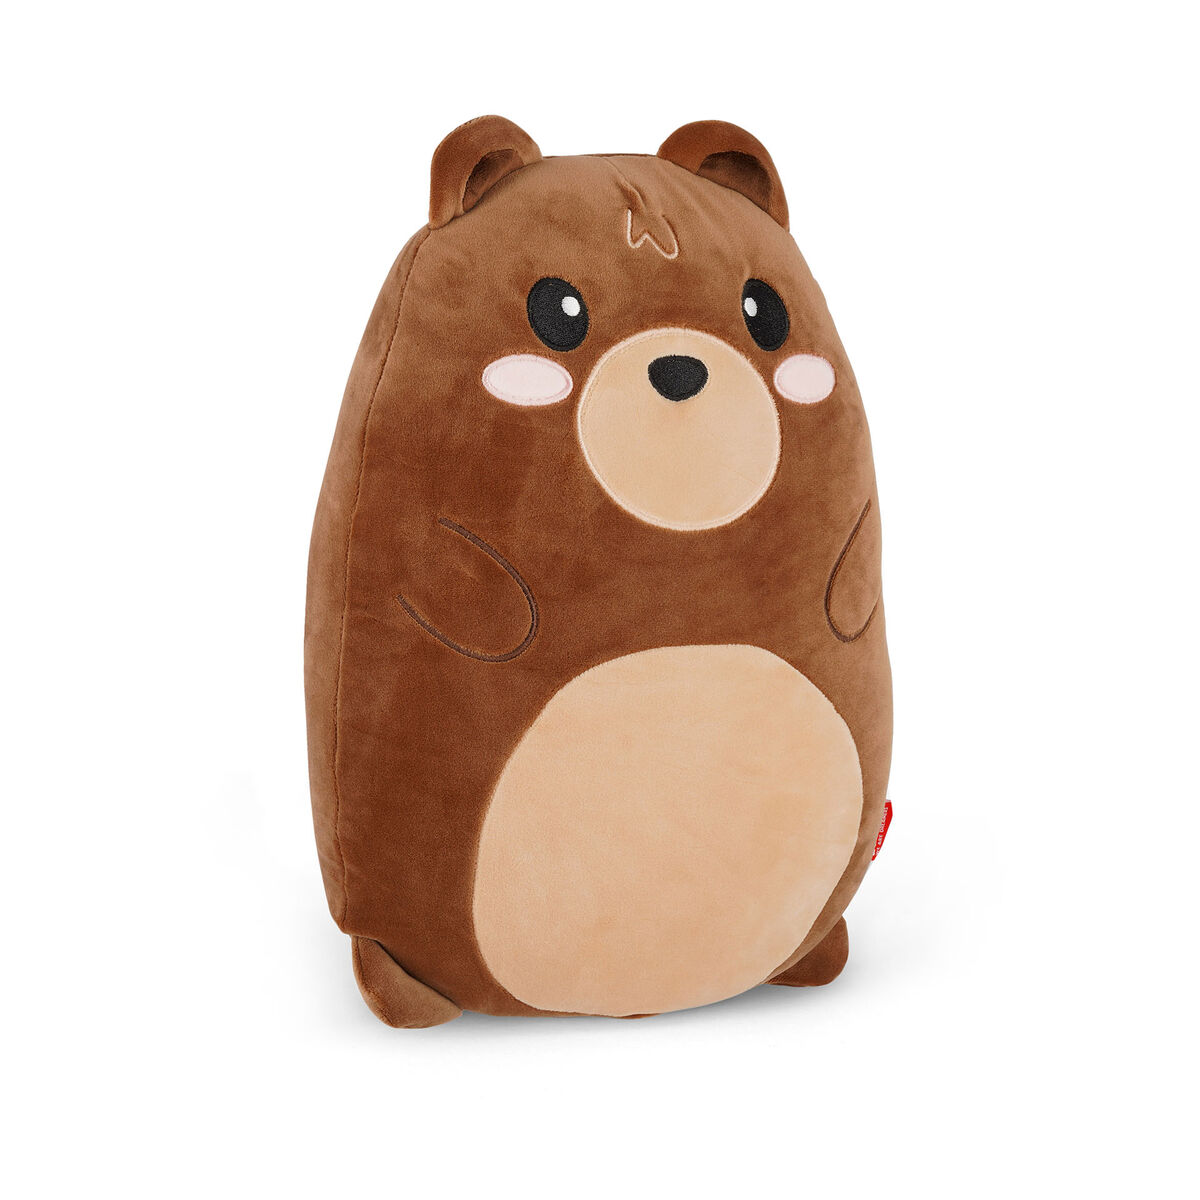 Pillow - Super Soft! TEDDY BEAR 